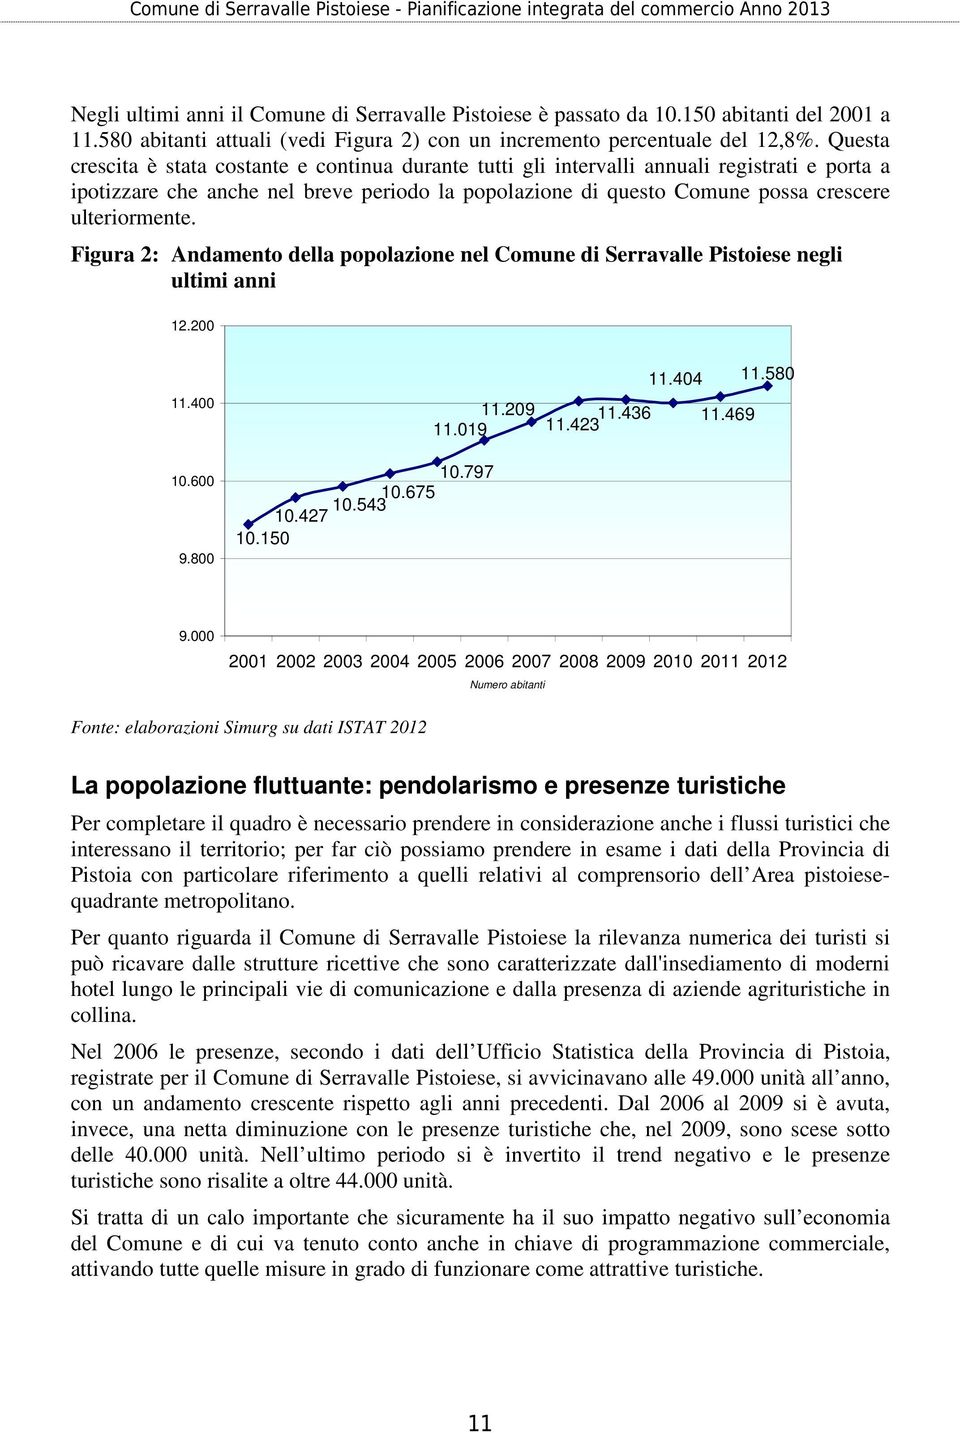 ulteriormente. Figura 2: Andamento della popolazione nel Comune di Serravalle Pistoiese negli ultimi anni 12.200 11.400 10.600 9.800 10.427 10.150 10.797 10.675 10.543 11.209 11.436 11.019 11.423 11.